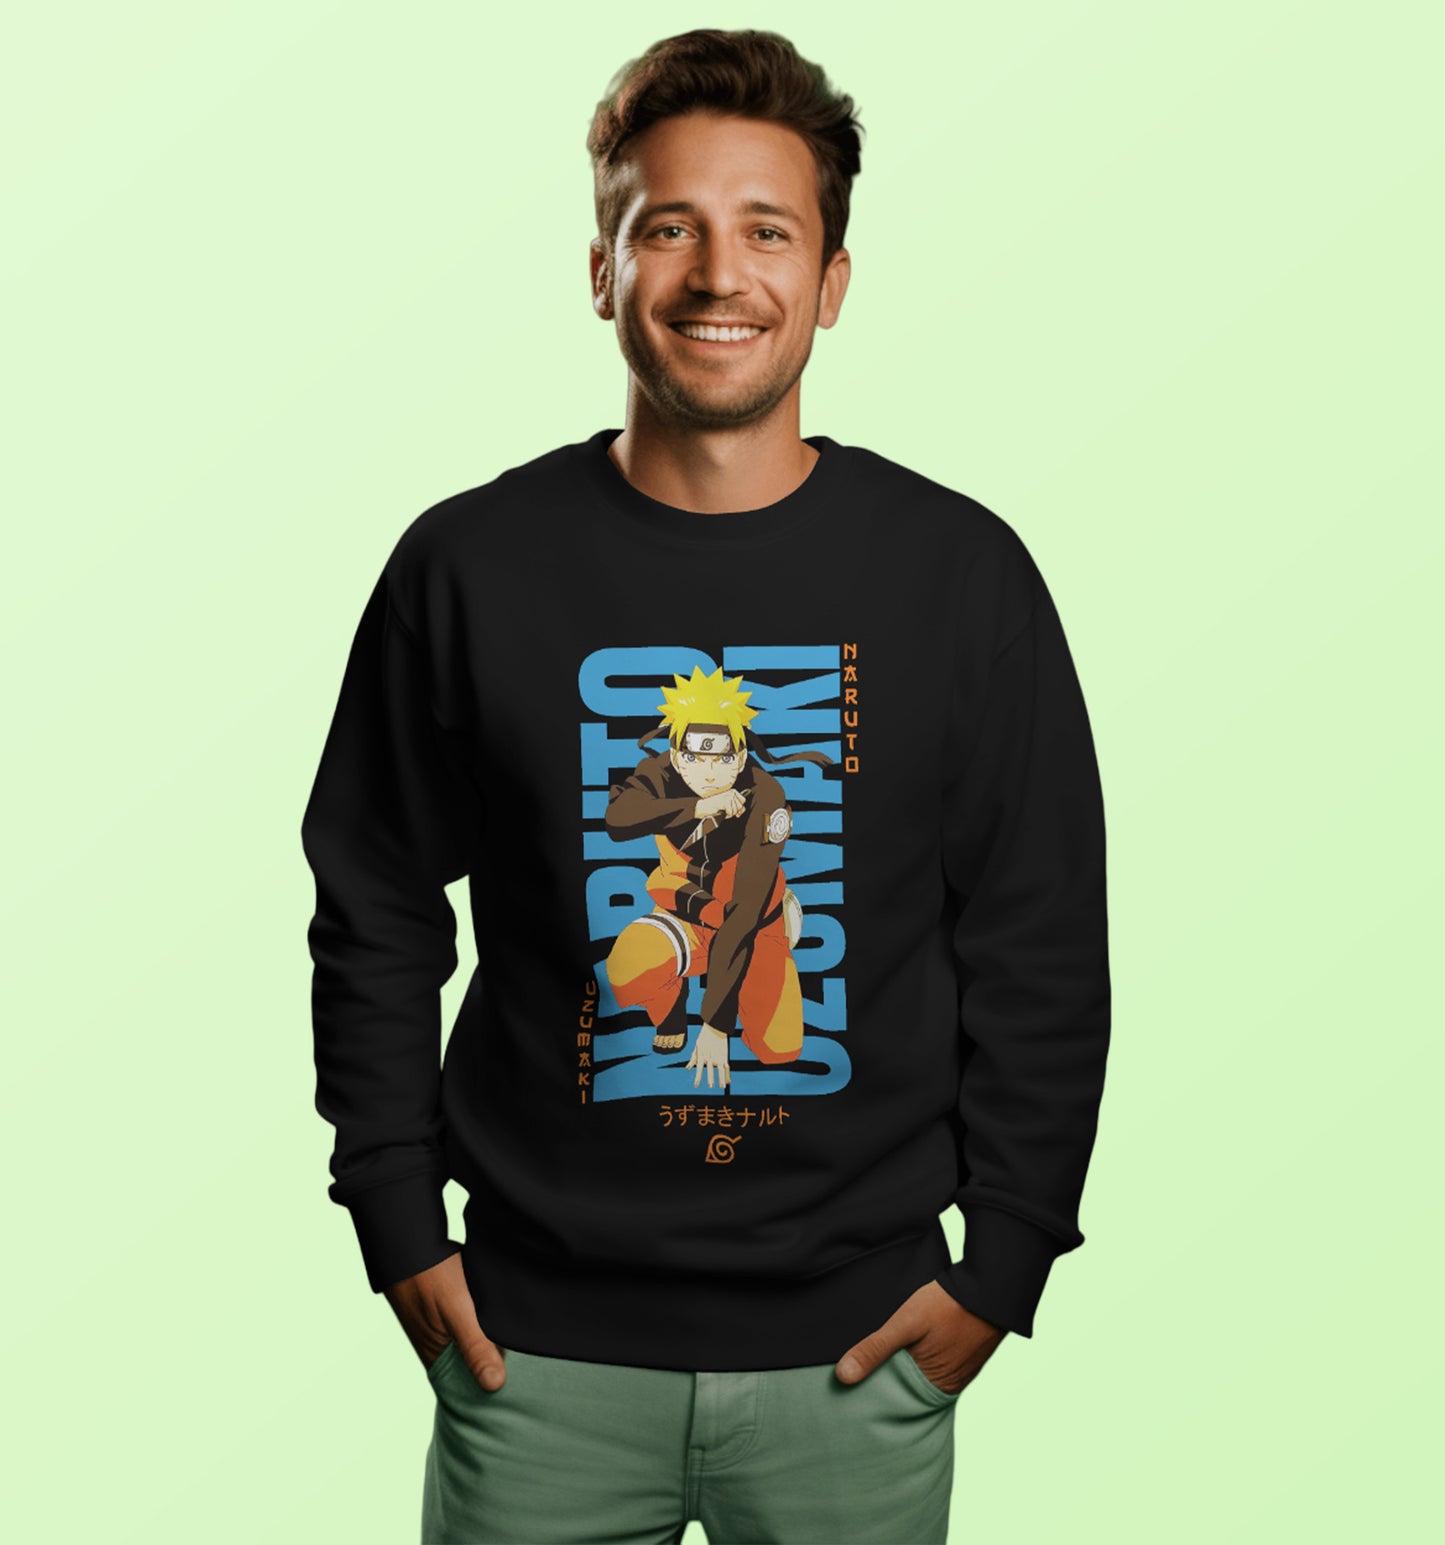 Naruto - Naruto Uzumaki Anime Sweatshirt In Black - Mon Zurich Originals